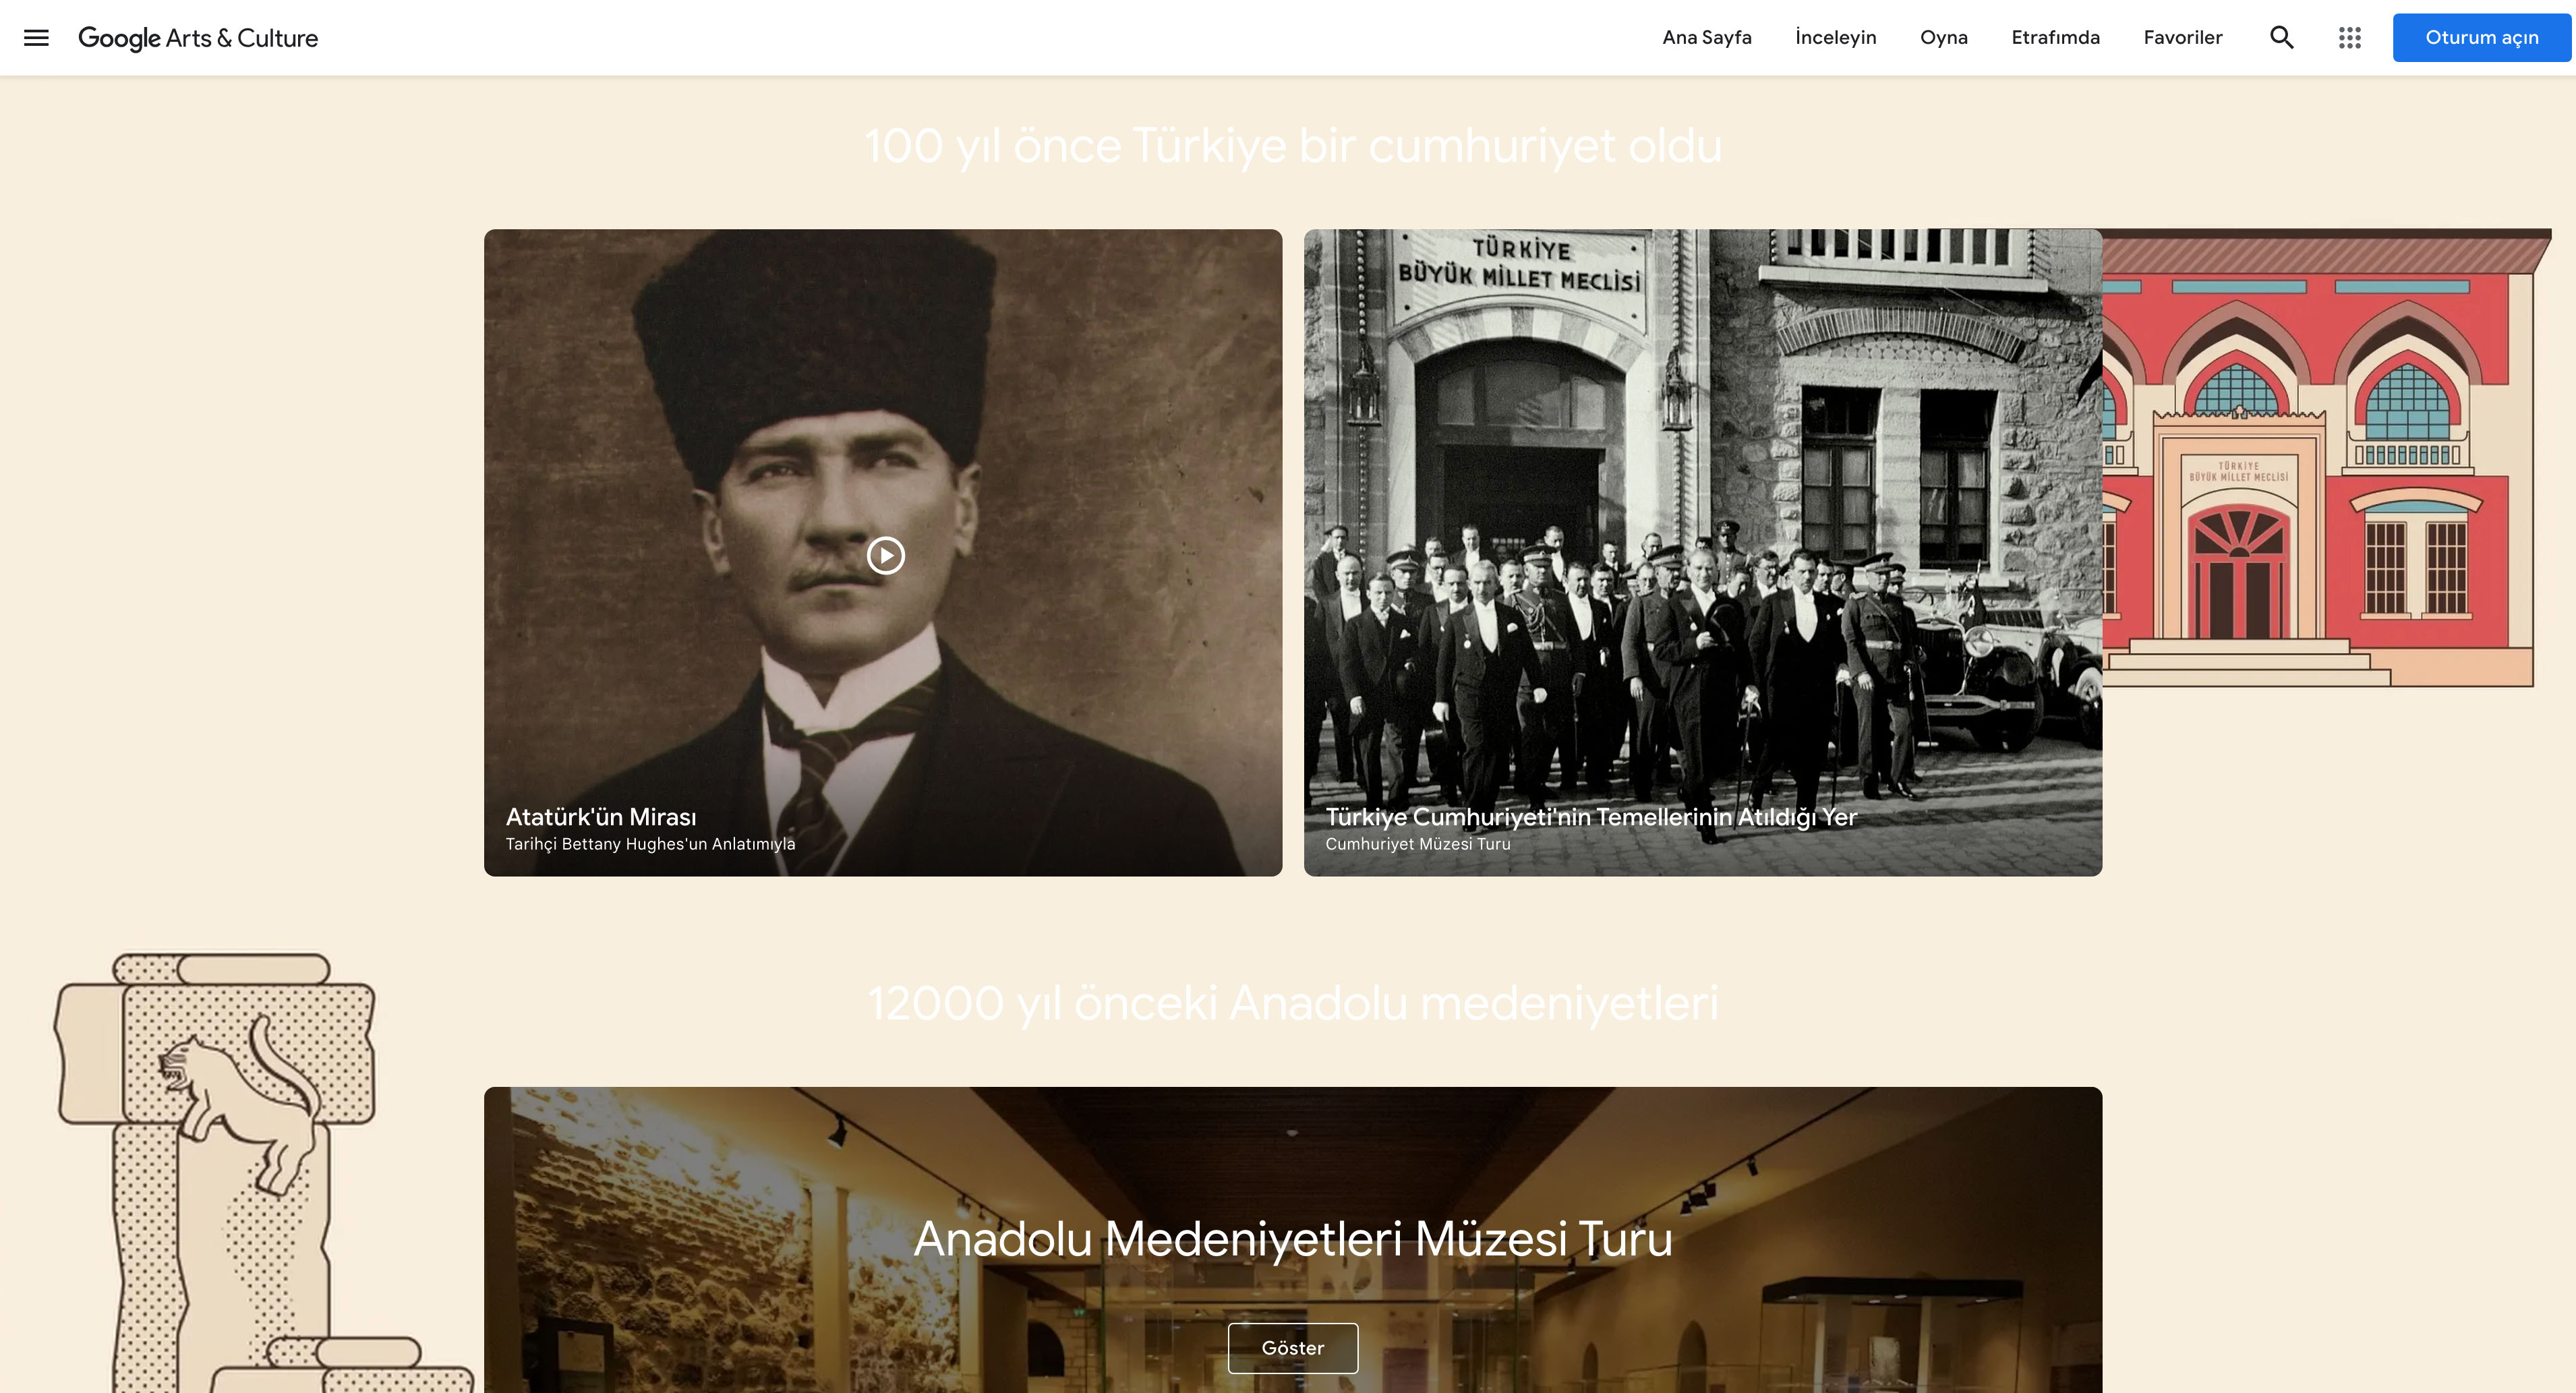 ”Türkiye’nin Hazineleri” dijital koleksiyonu tüm dünyanın erişimine açıldı